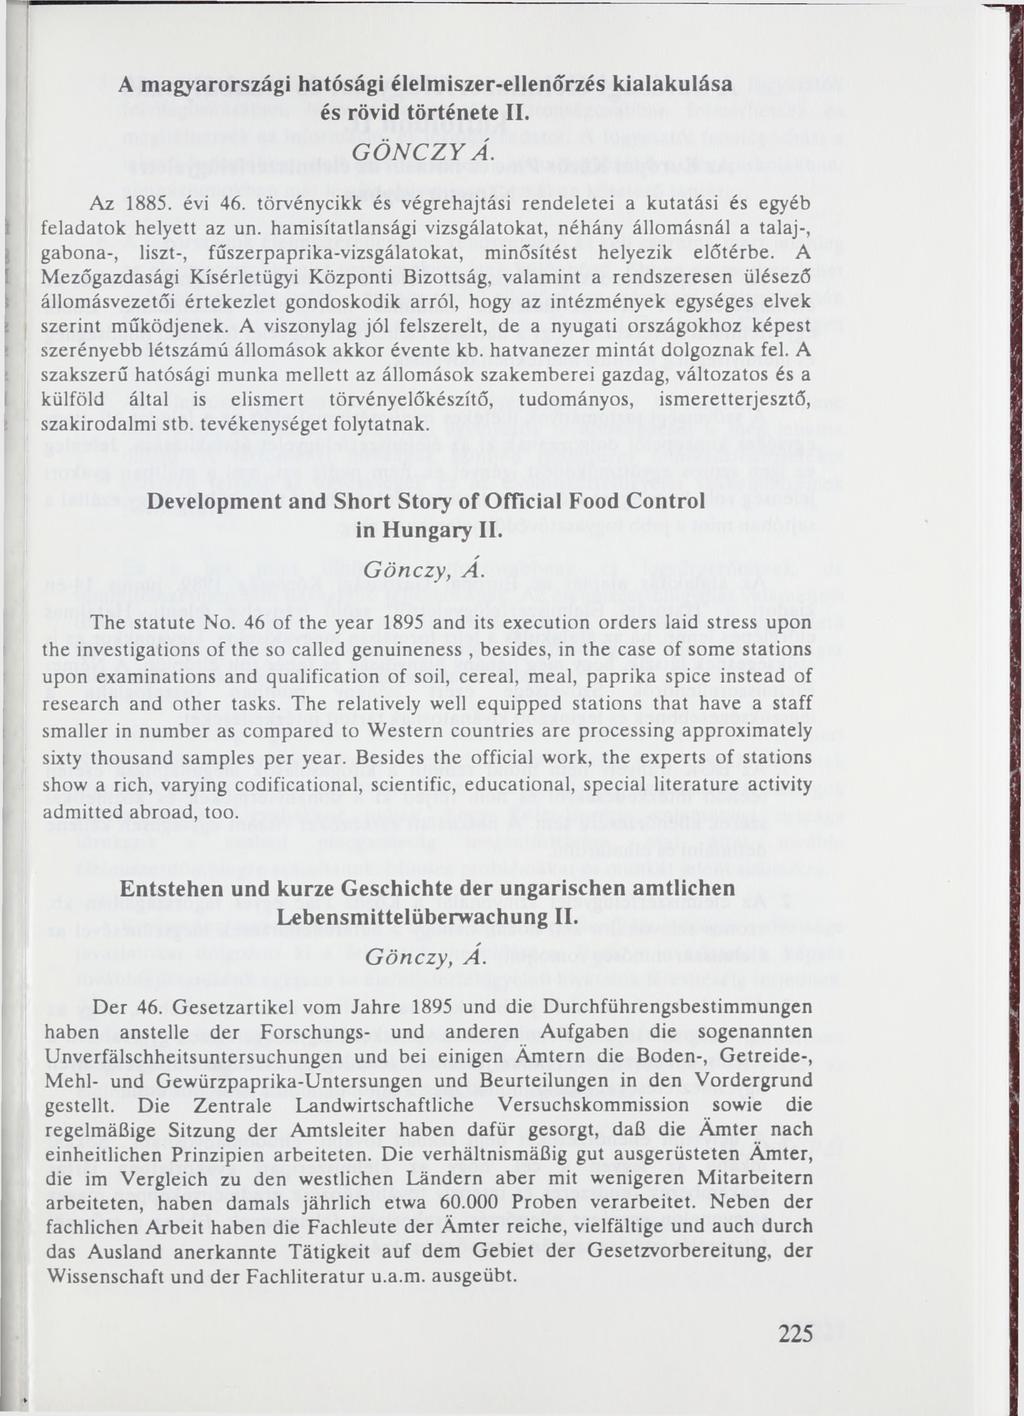 A magyarországi hatósági élelmiszer-ellenőrzés kialakulása és rövid története II. G Ö N C Z Y Á. Az 1885. évi 46. törvénycikk és végrehajtási rendeletéi a kutatási és egyéb i feladatok helyett az un.